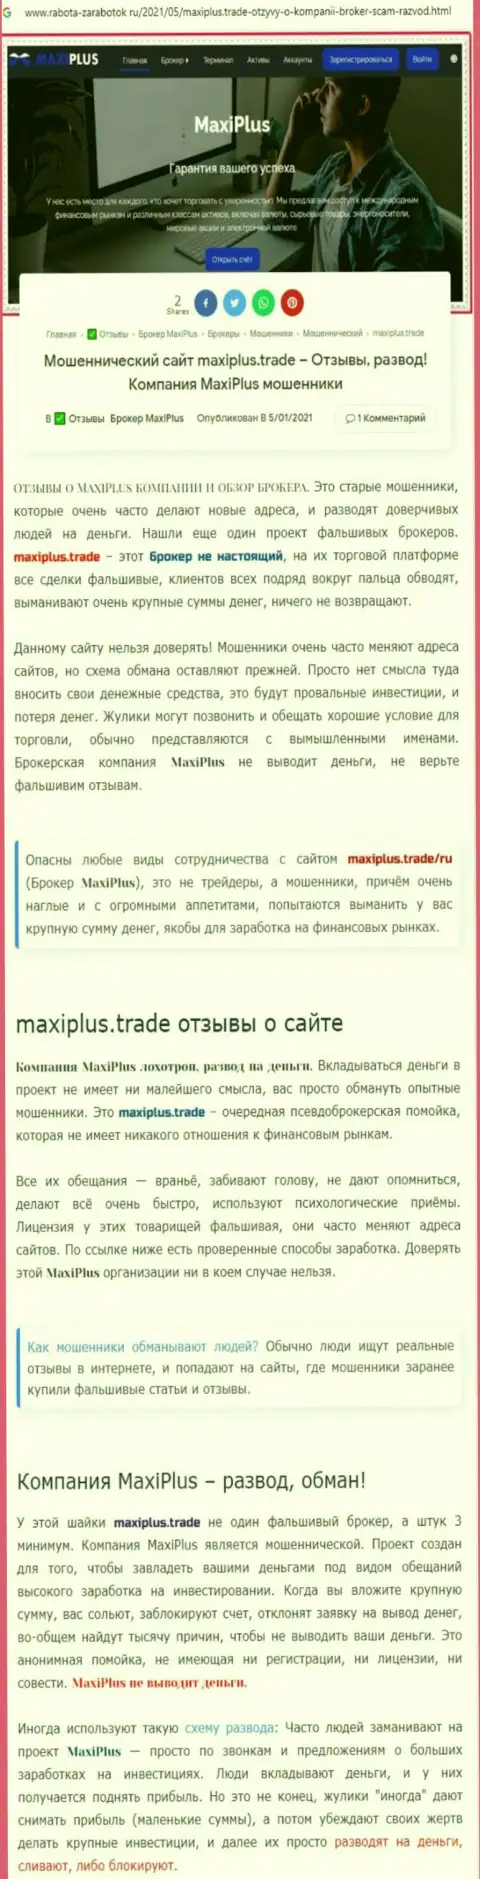 Maxi Plus - это МОШЕННИКИ ! Принцип работы РАЗВОДНЯКА (обзор мошеннических уловок)